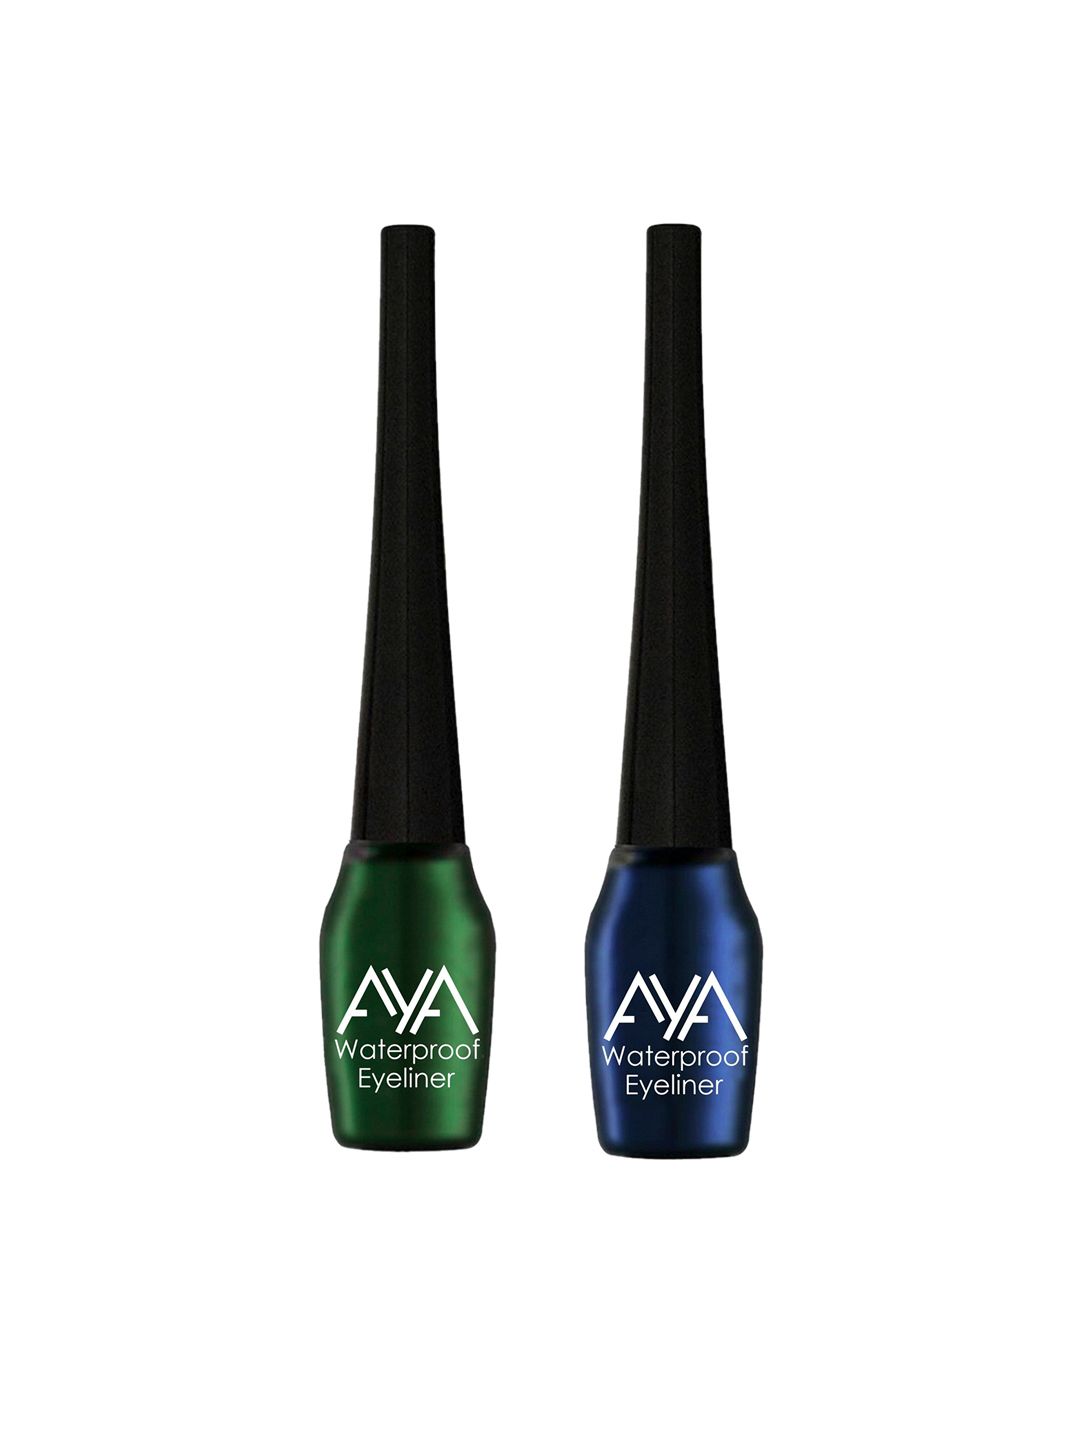 AYA Set of 2 Waterproof Eyeliner - Green & Blue - 5 ml each Price in India